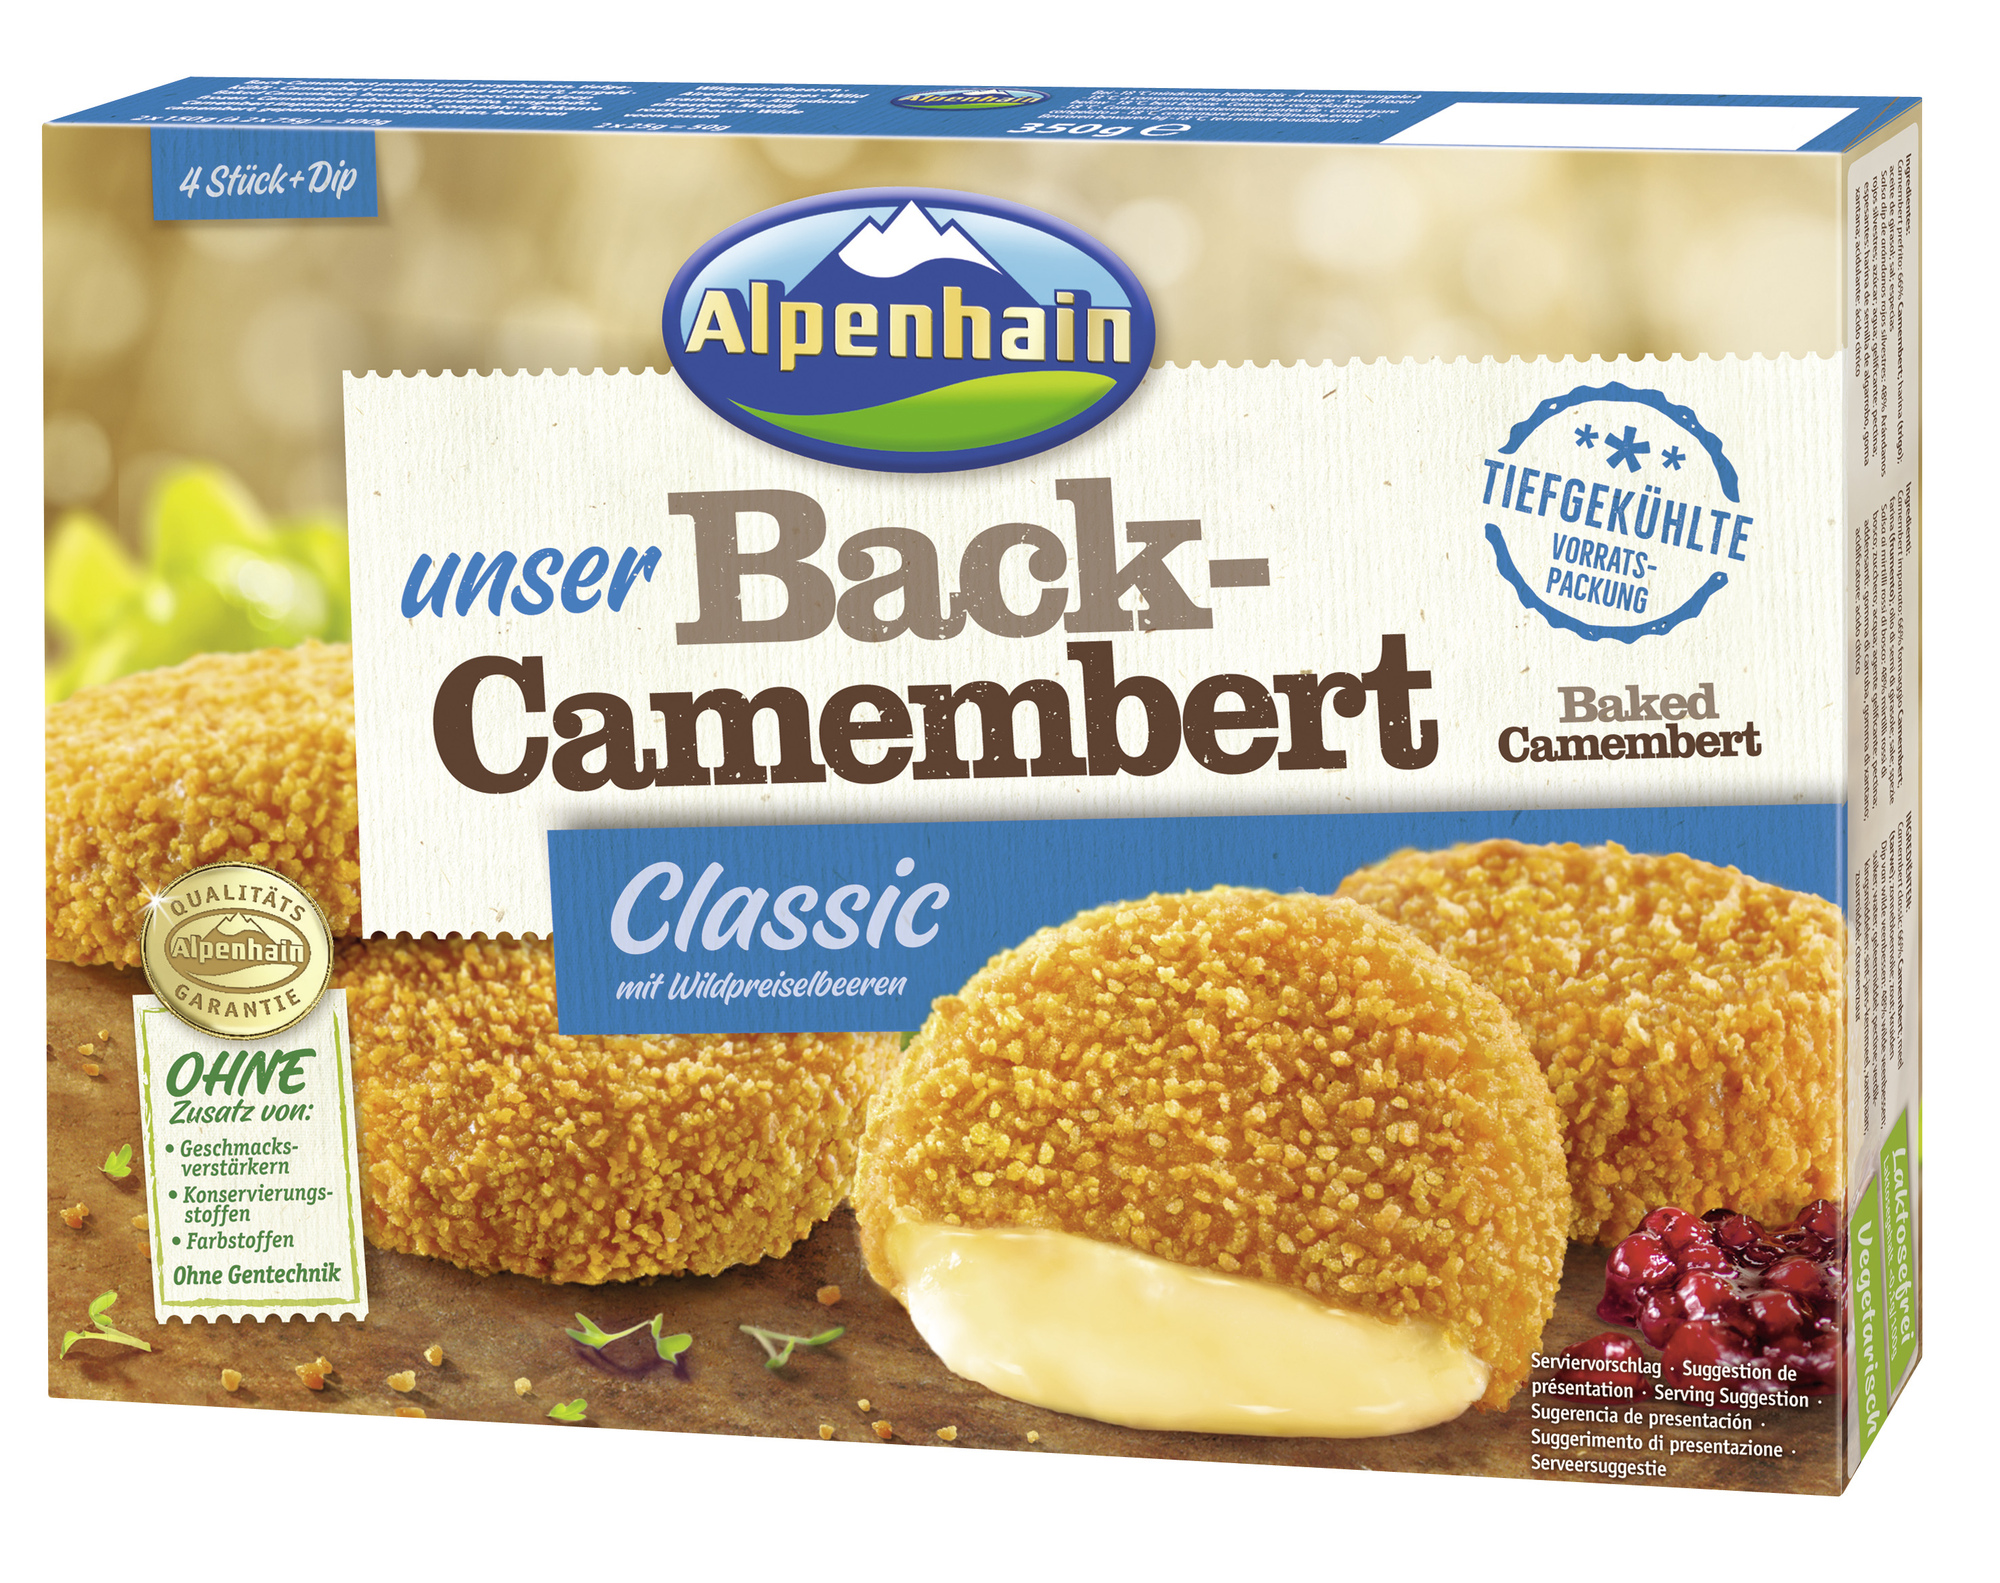 Back-Camembert 350g